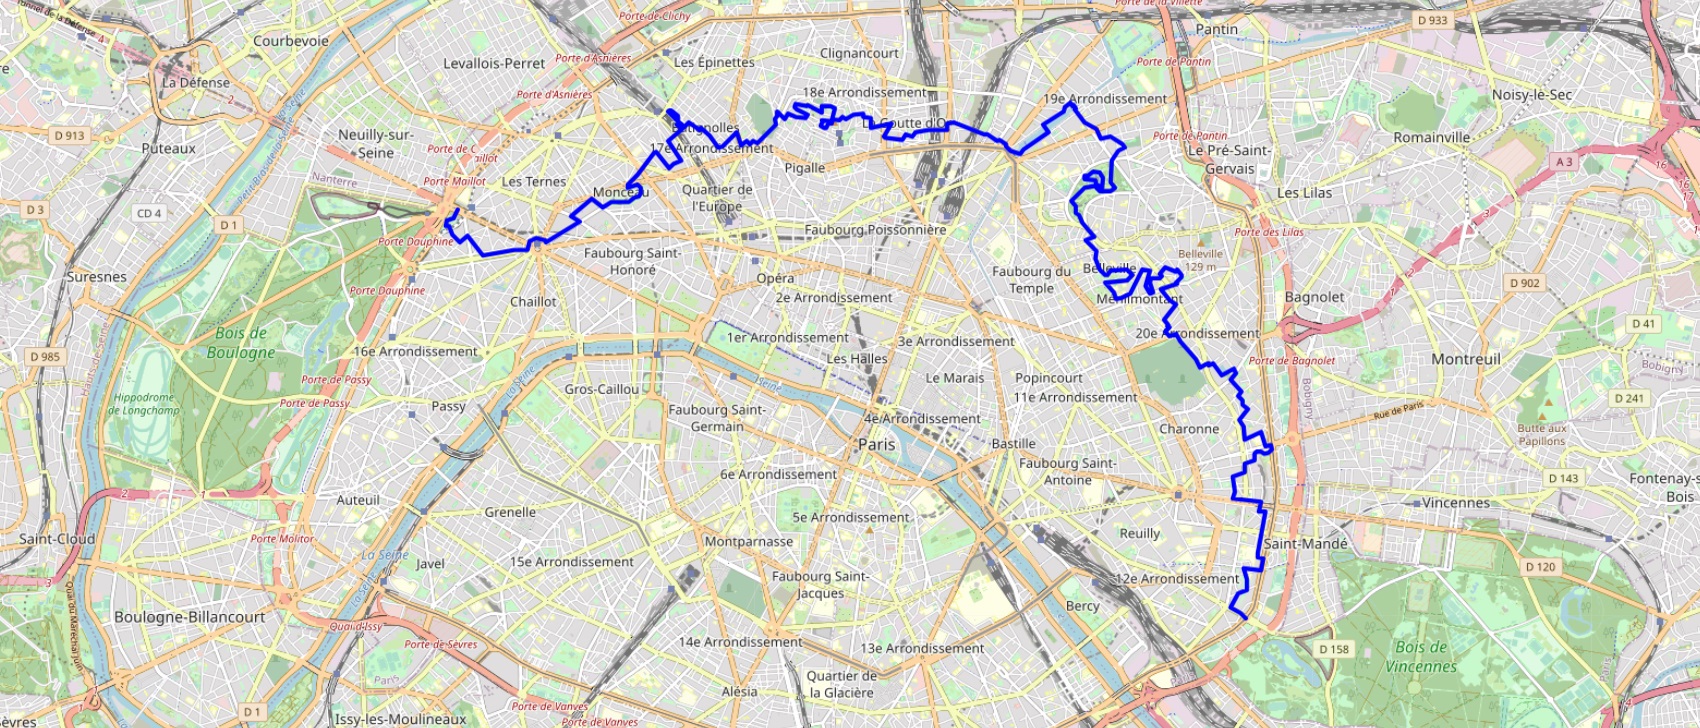 Hike through Paris from Porte Maillot to Porte Doree (West-East-South)